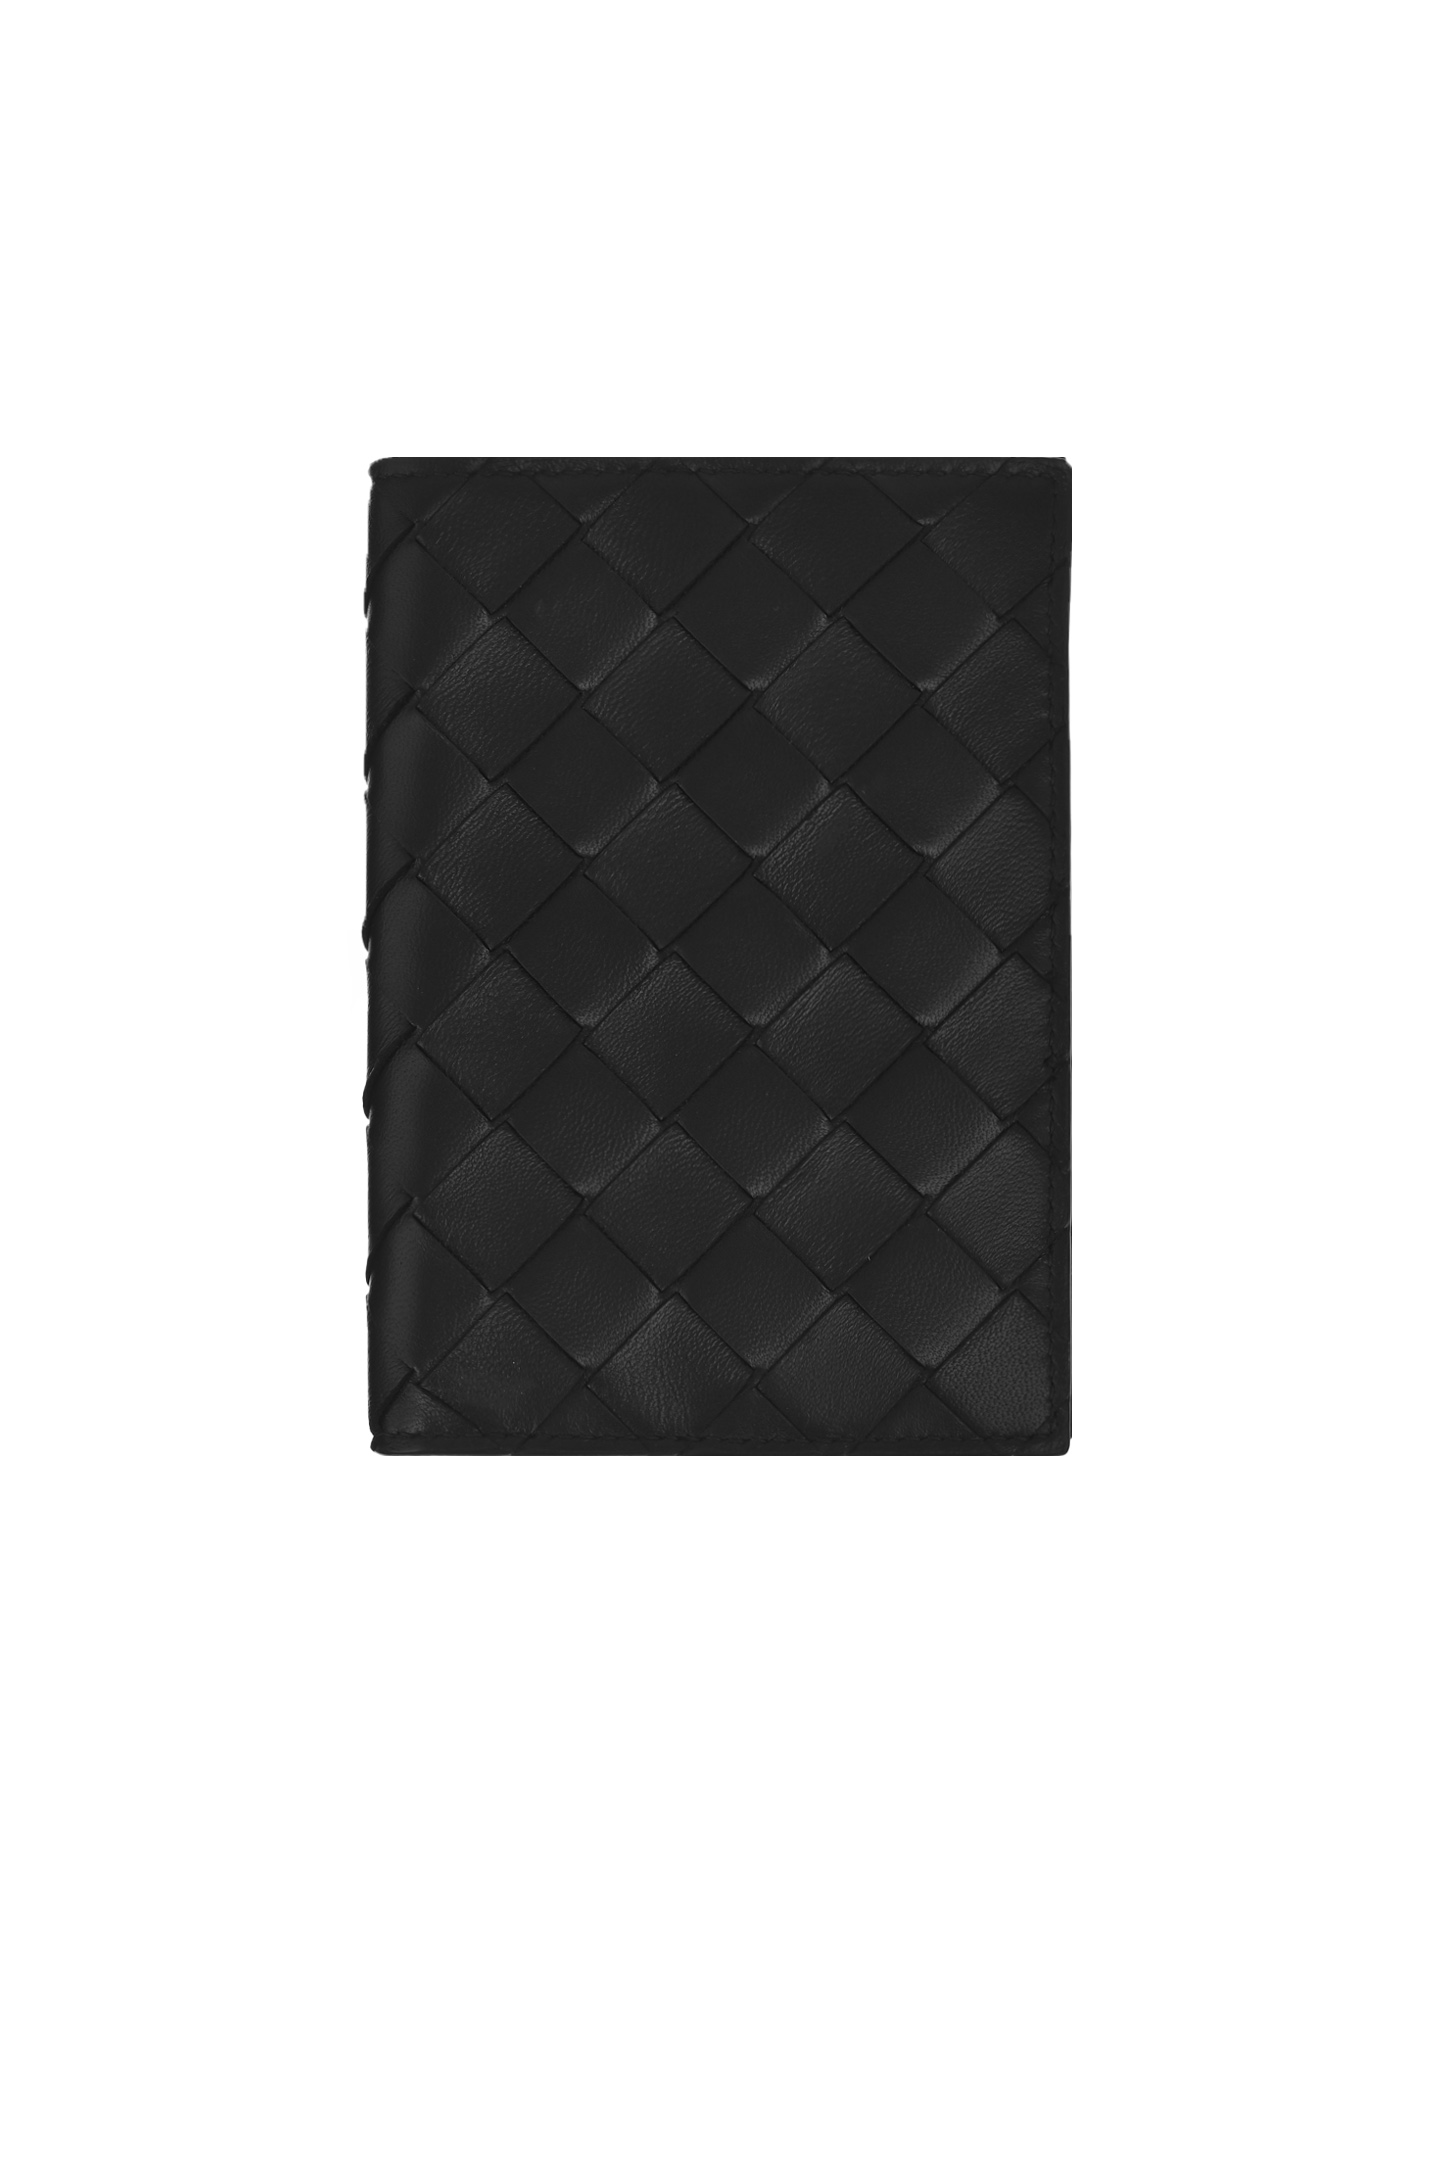 Обложка для паспорта BOTTEGA VENETA 608061VCPP2, цвет: Черный, Женский